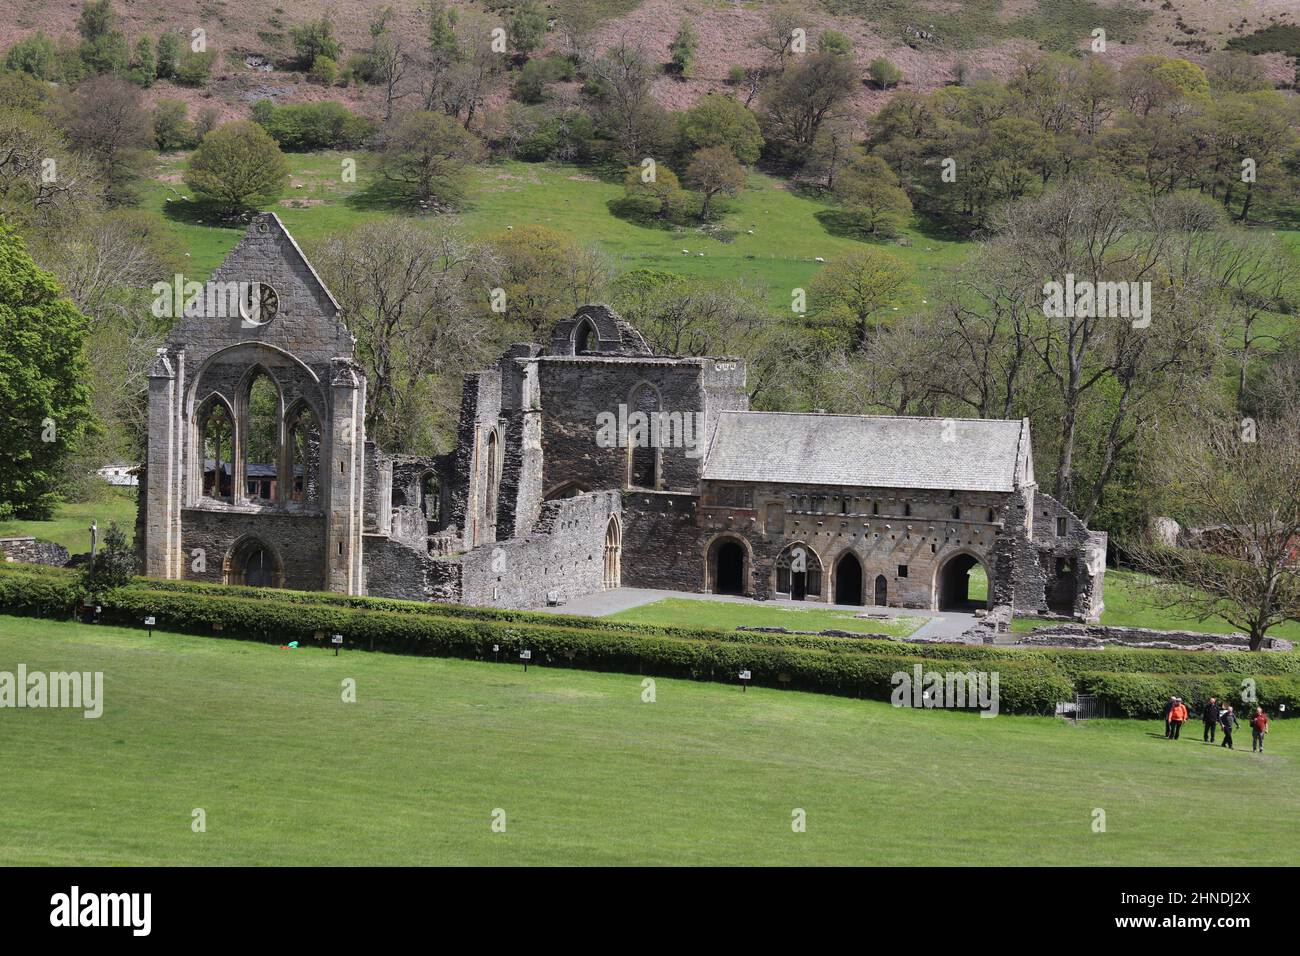 L'abbazia di Valle Crucis è un'abbazia cistercense situata a Llantysillio nel Denbighshire, fondata nel 1201 dal principe Madog ap Gruffydd Foto Stock